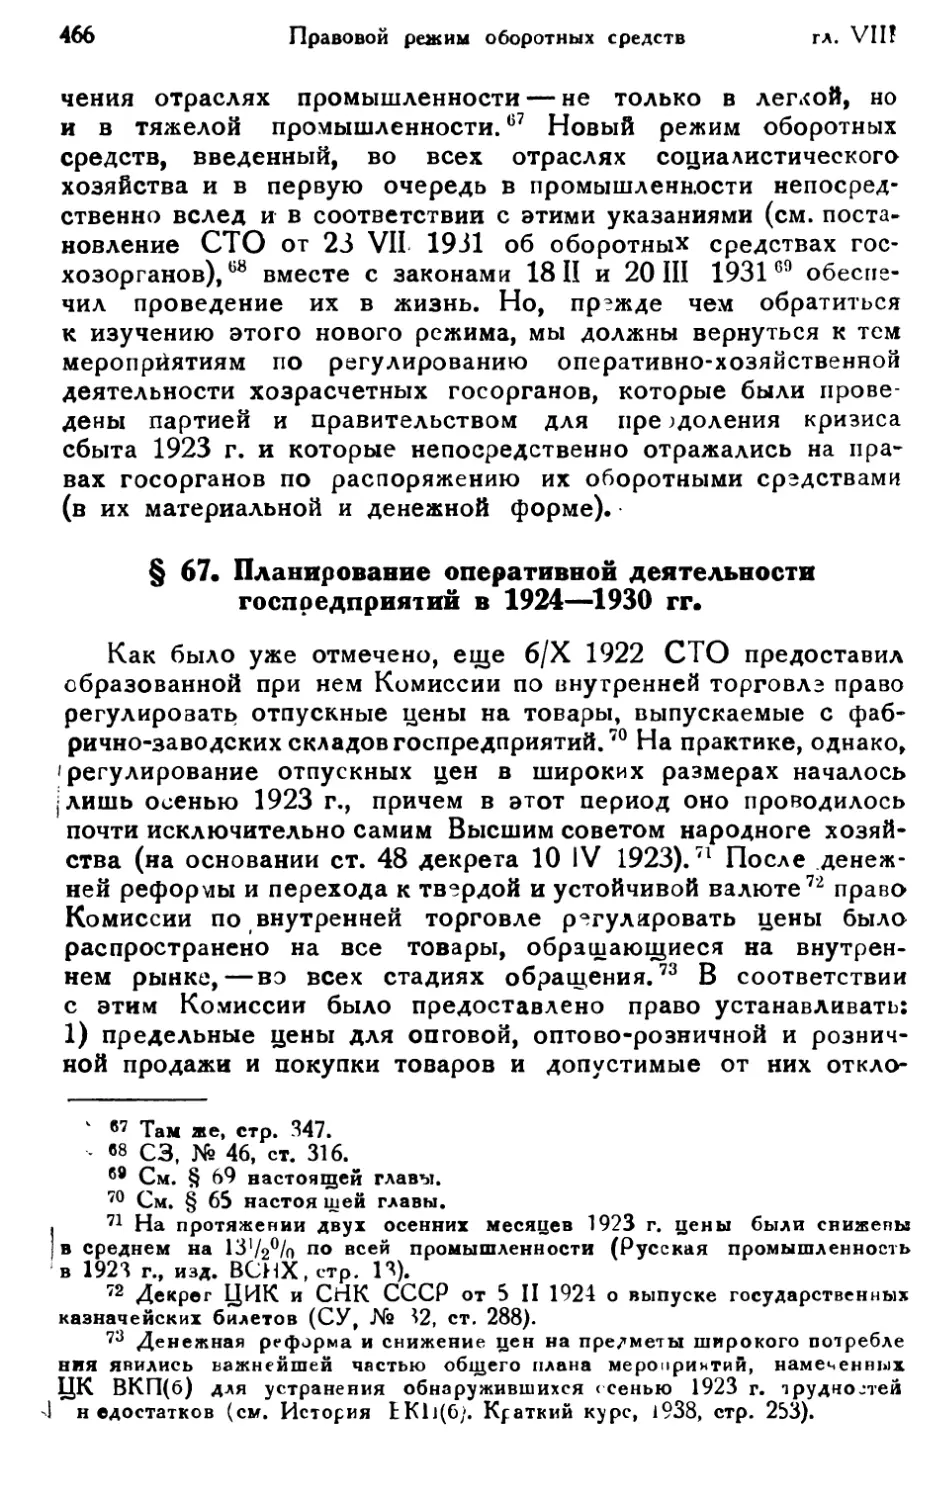 § 67. Планирование оперативной деятельности госпредприятий в 1924—1930 гг